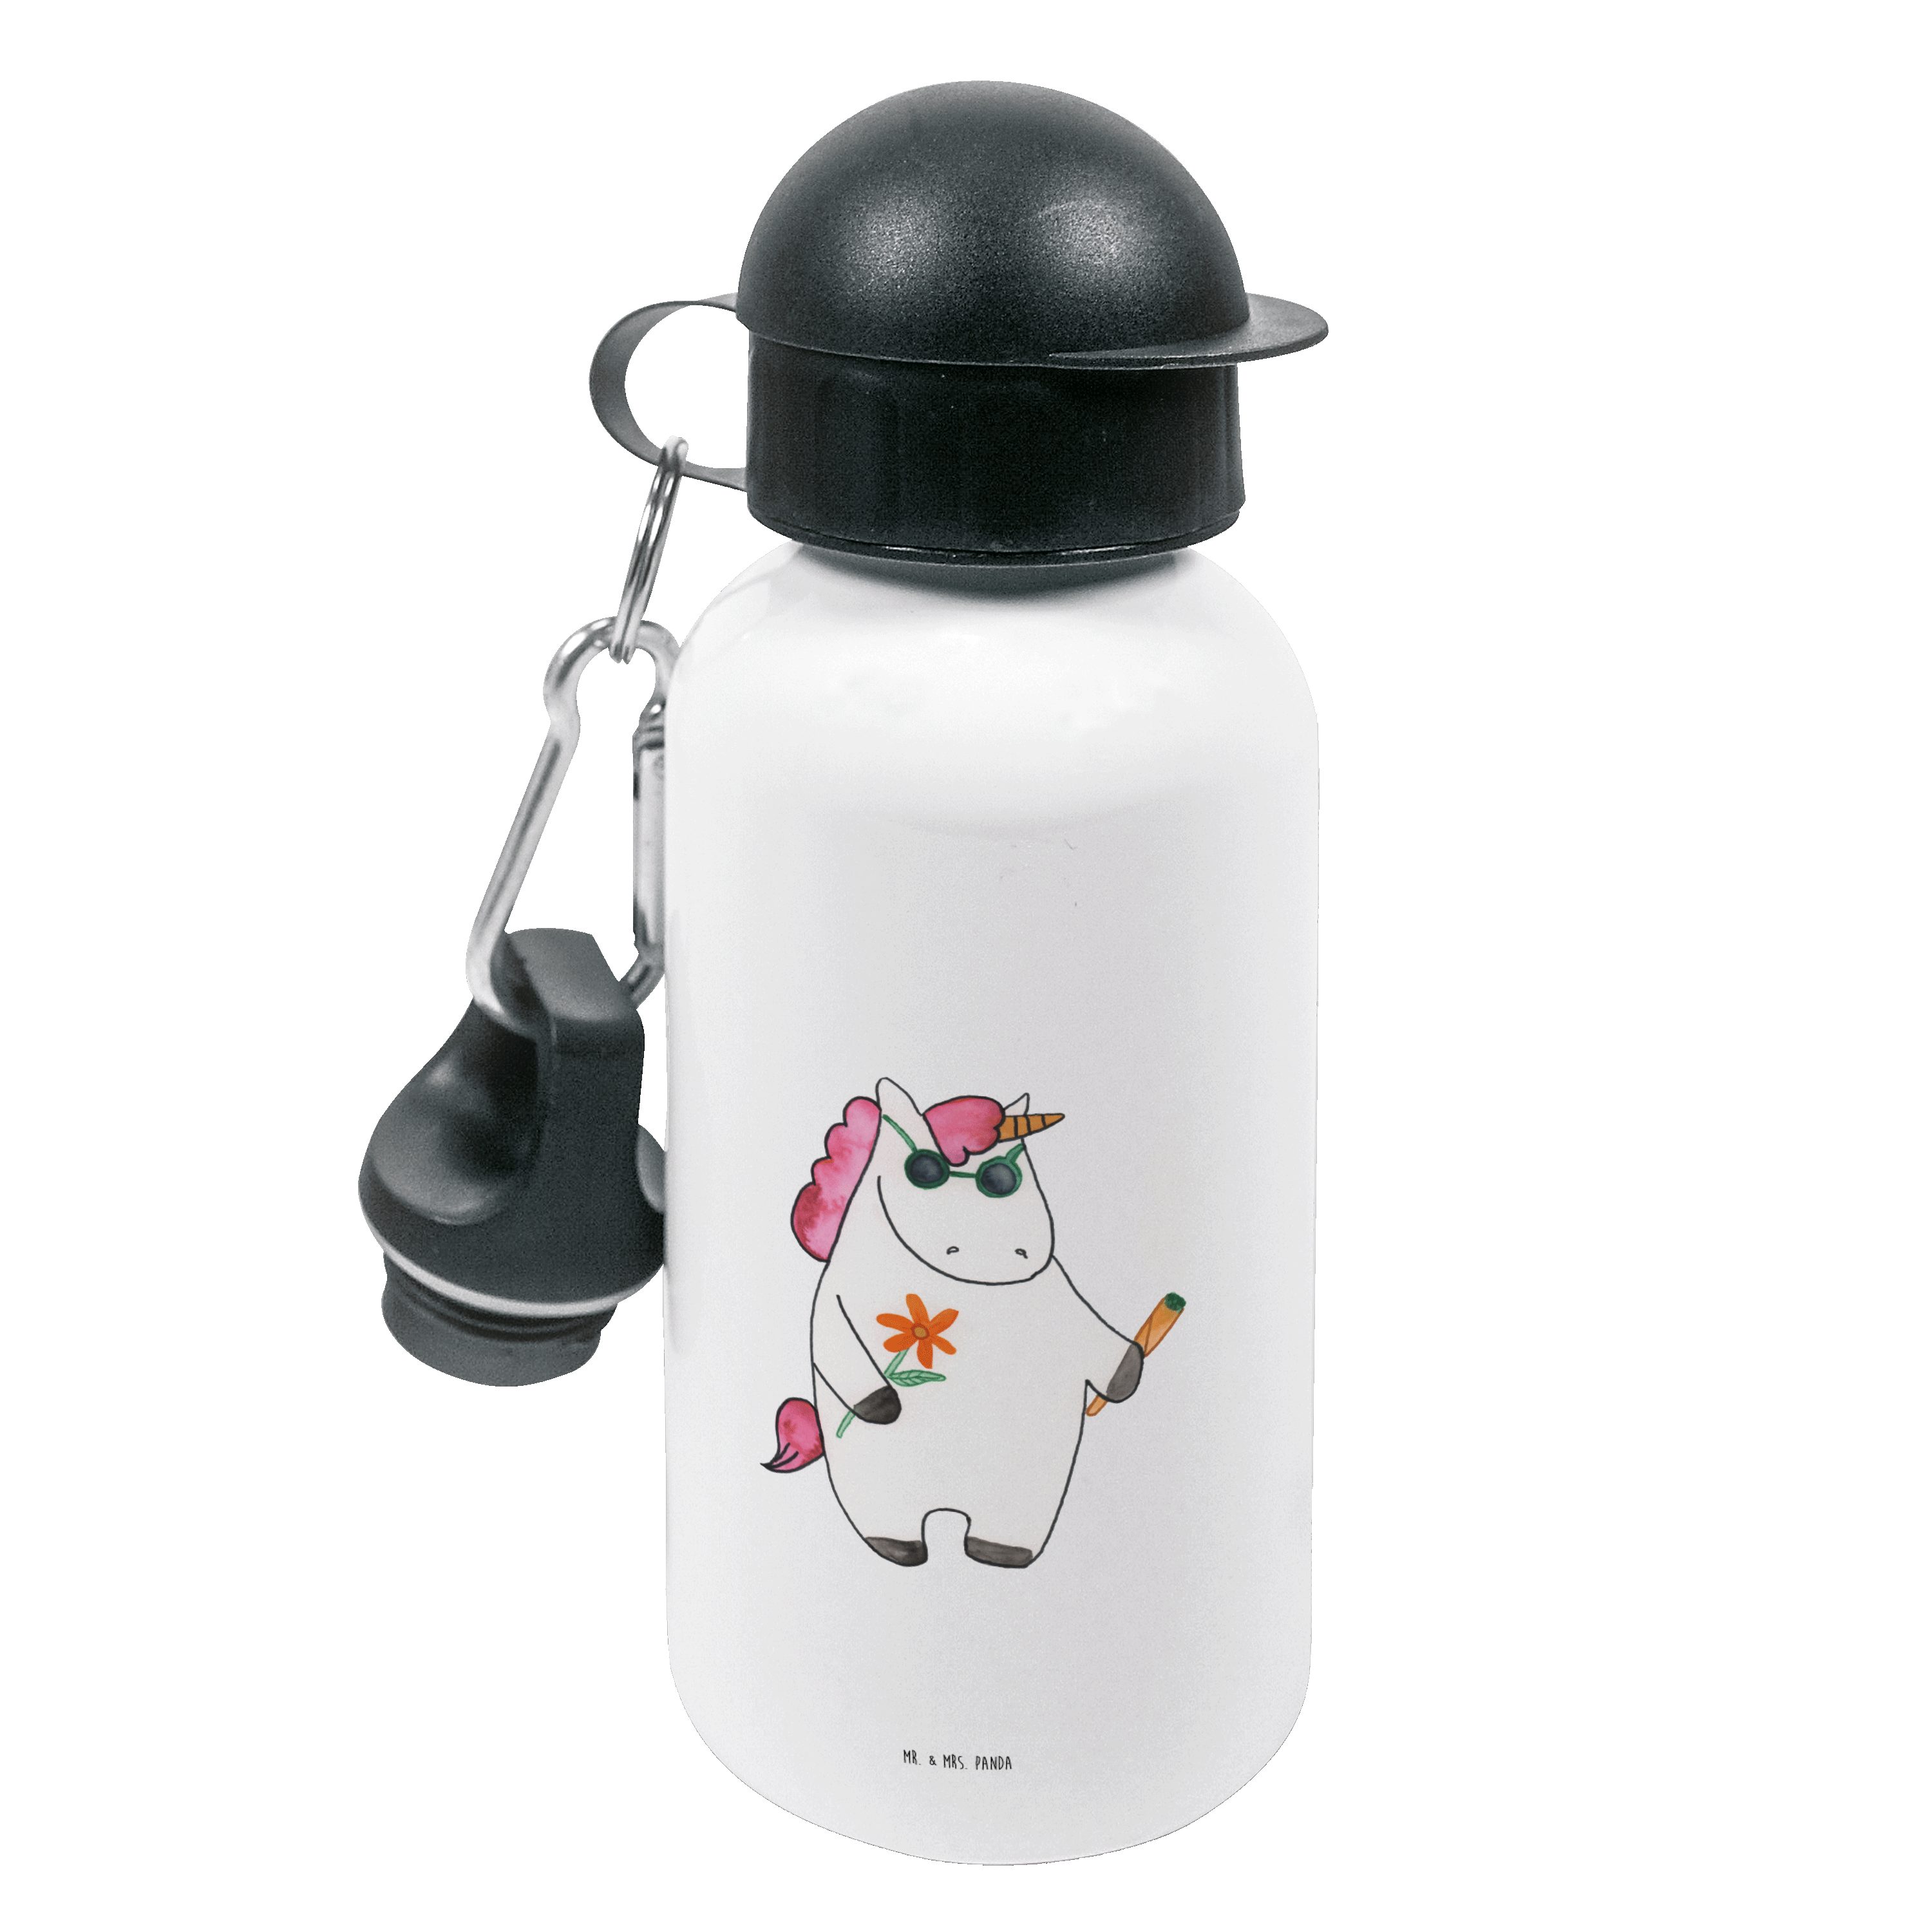 Mr. & - Deko Weiß - Einhorn Einhörner, Trinkflasche Mrs. Woodstock Panda Flasche, Einhorn Geschenk